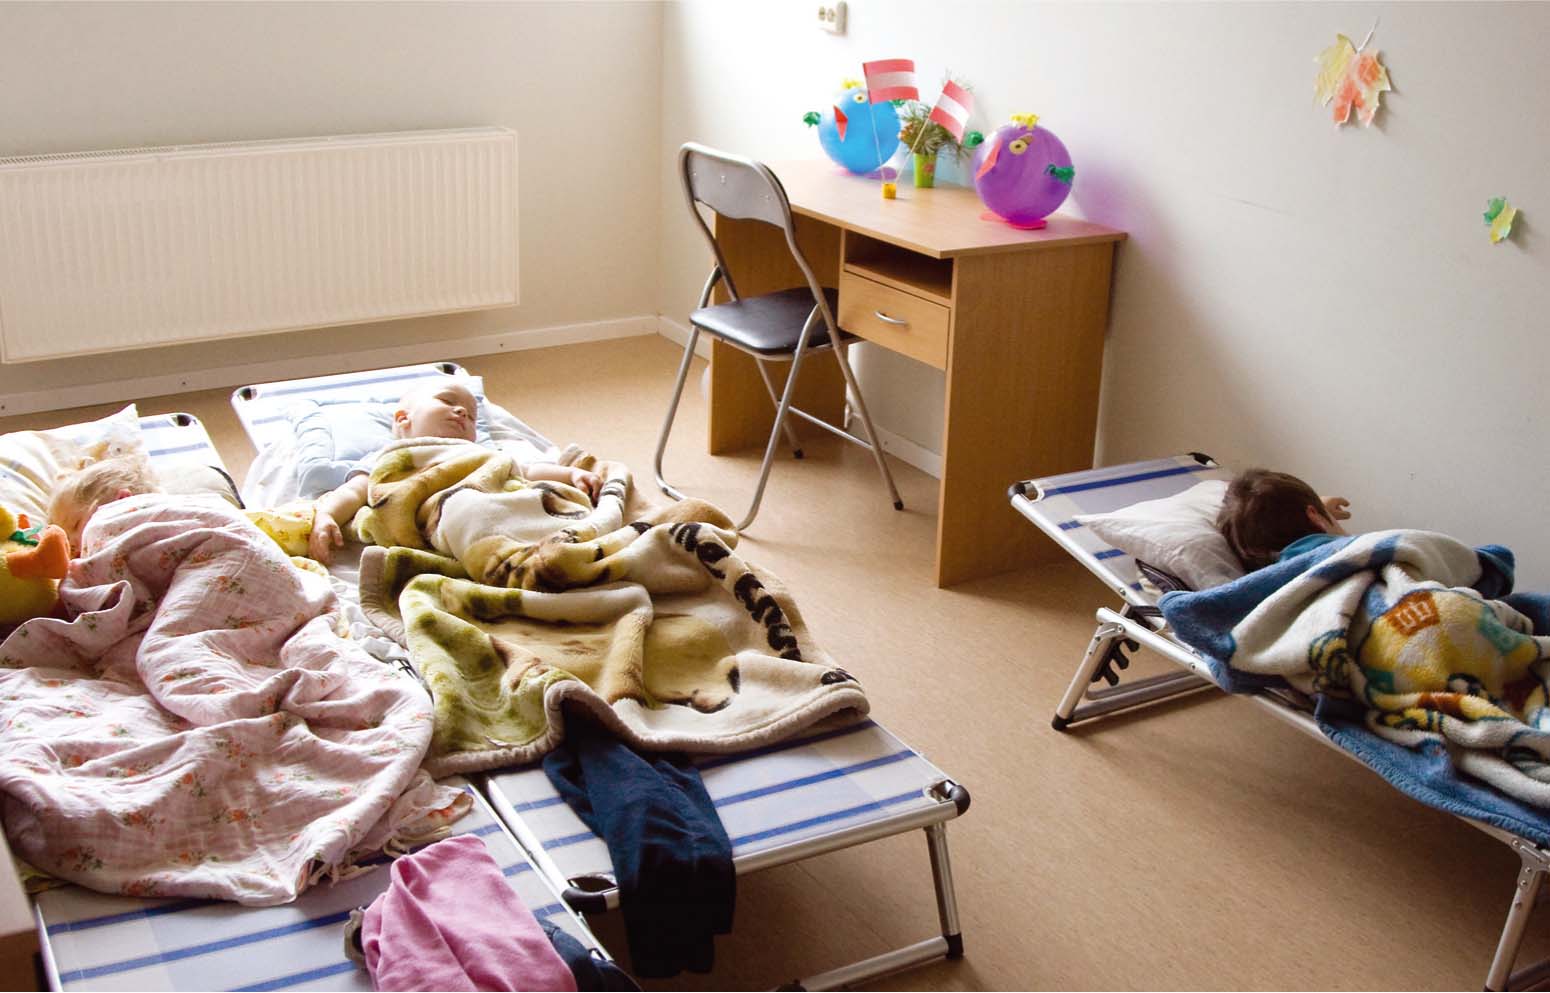 Pusdienas snaudā aizmiguši slimnīcas darbinieku bērni, kam te ierīkota rotaļu grupiņa